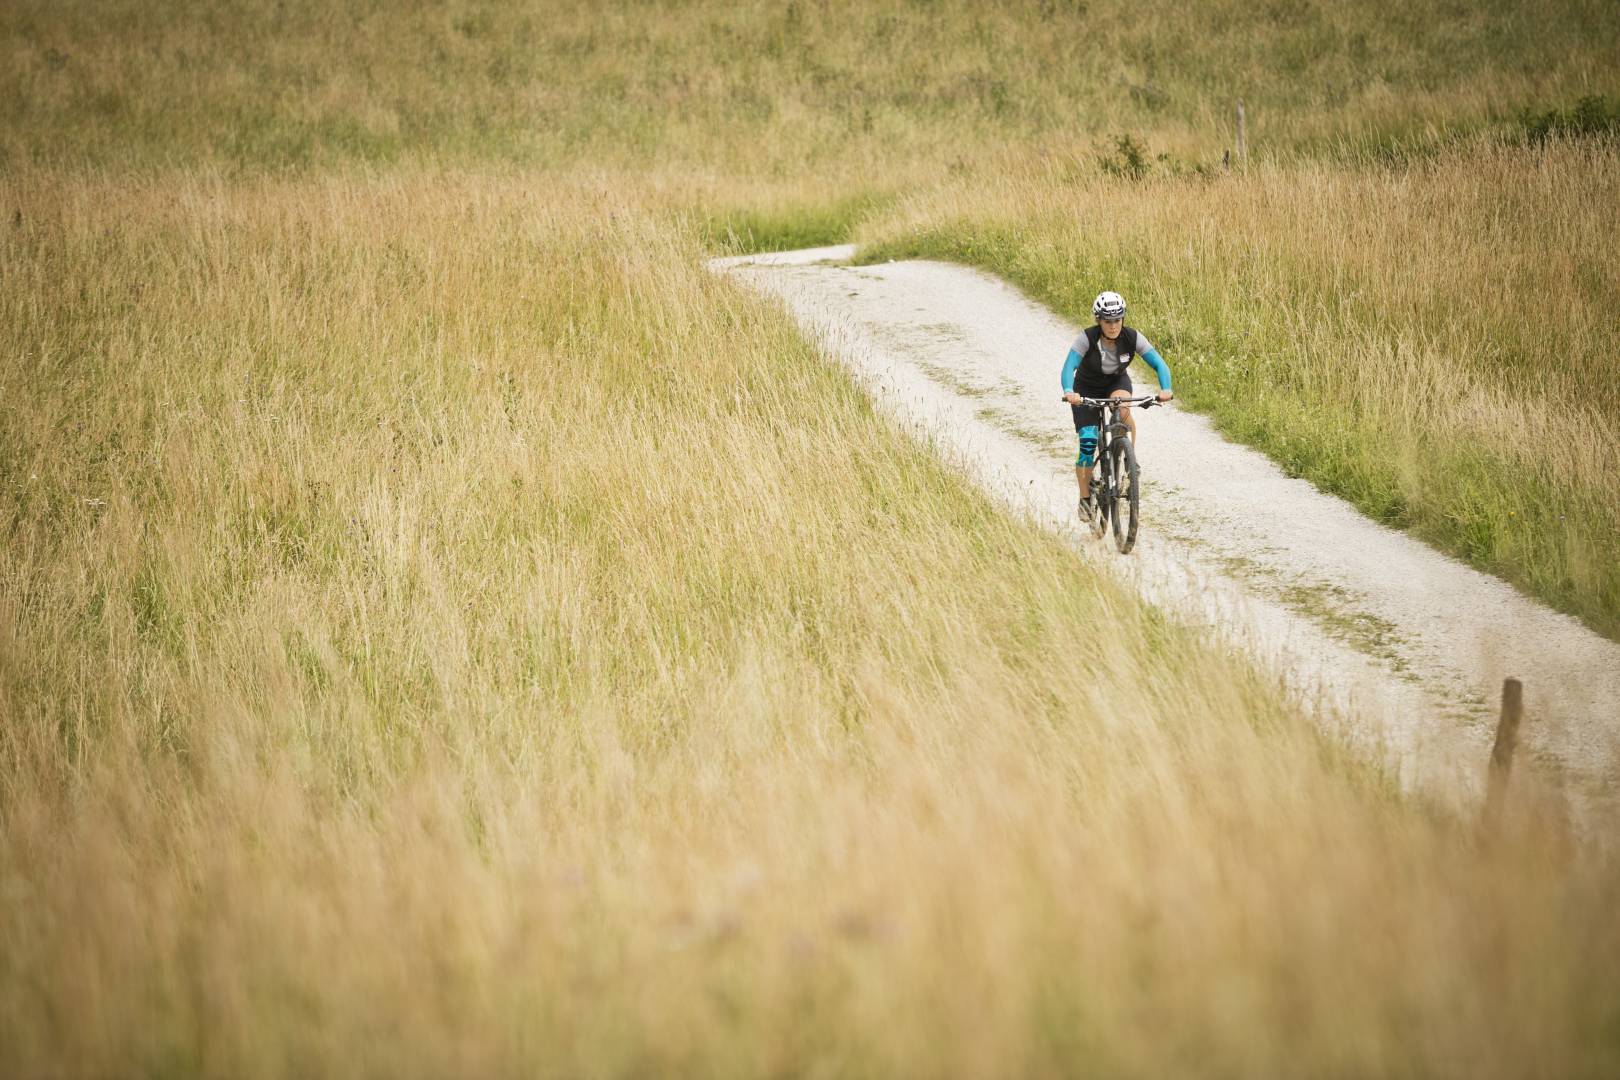 Frau mit Armsleeves und Kniebandage im Bildhintergrund fährt auf einem Mountainbike über einen Weg zwischen hohem Gras